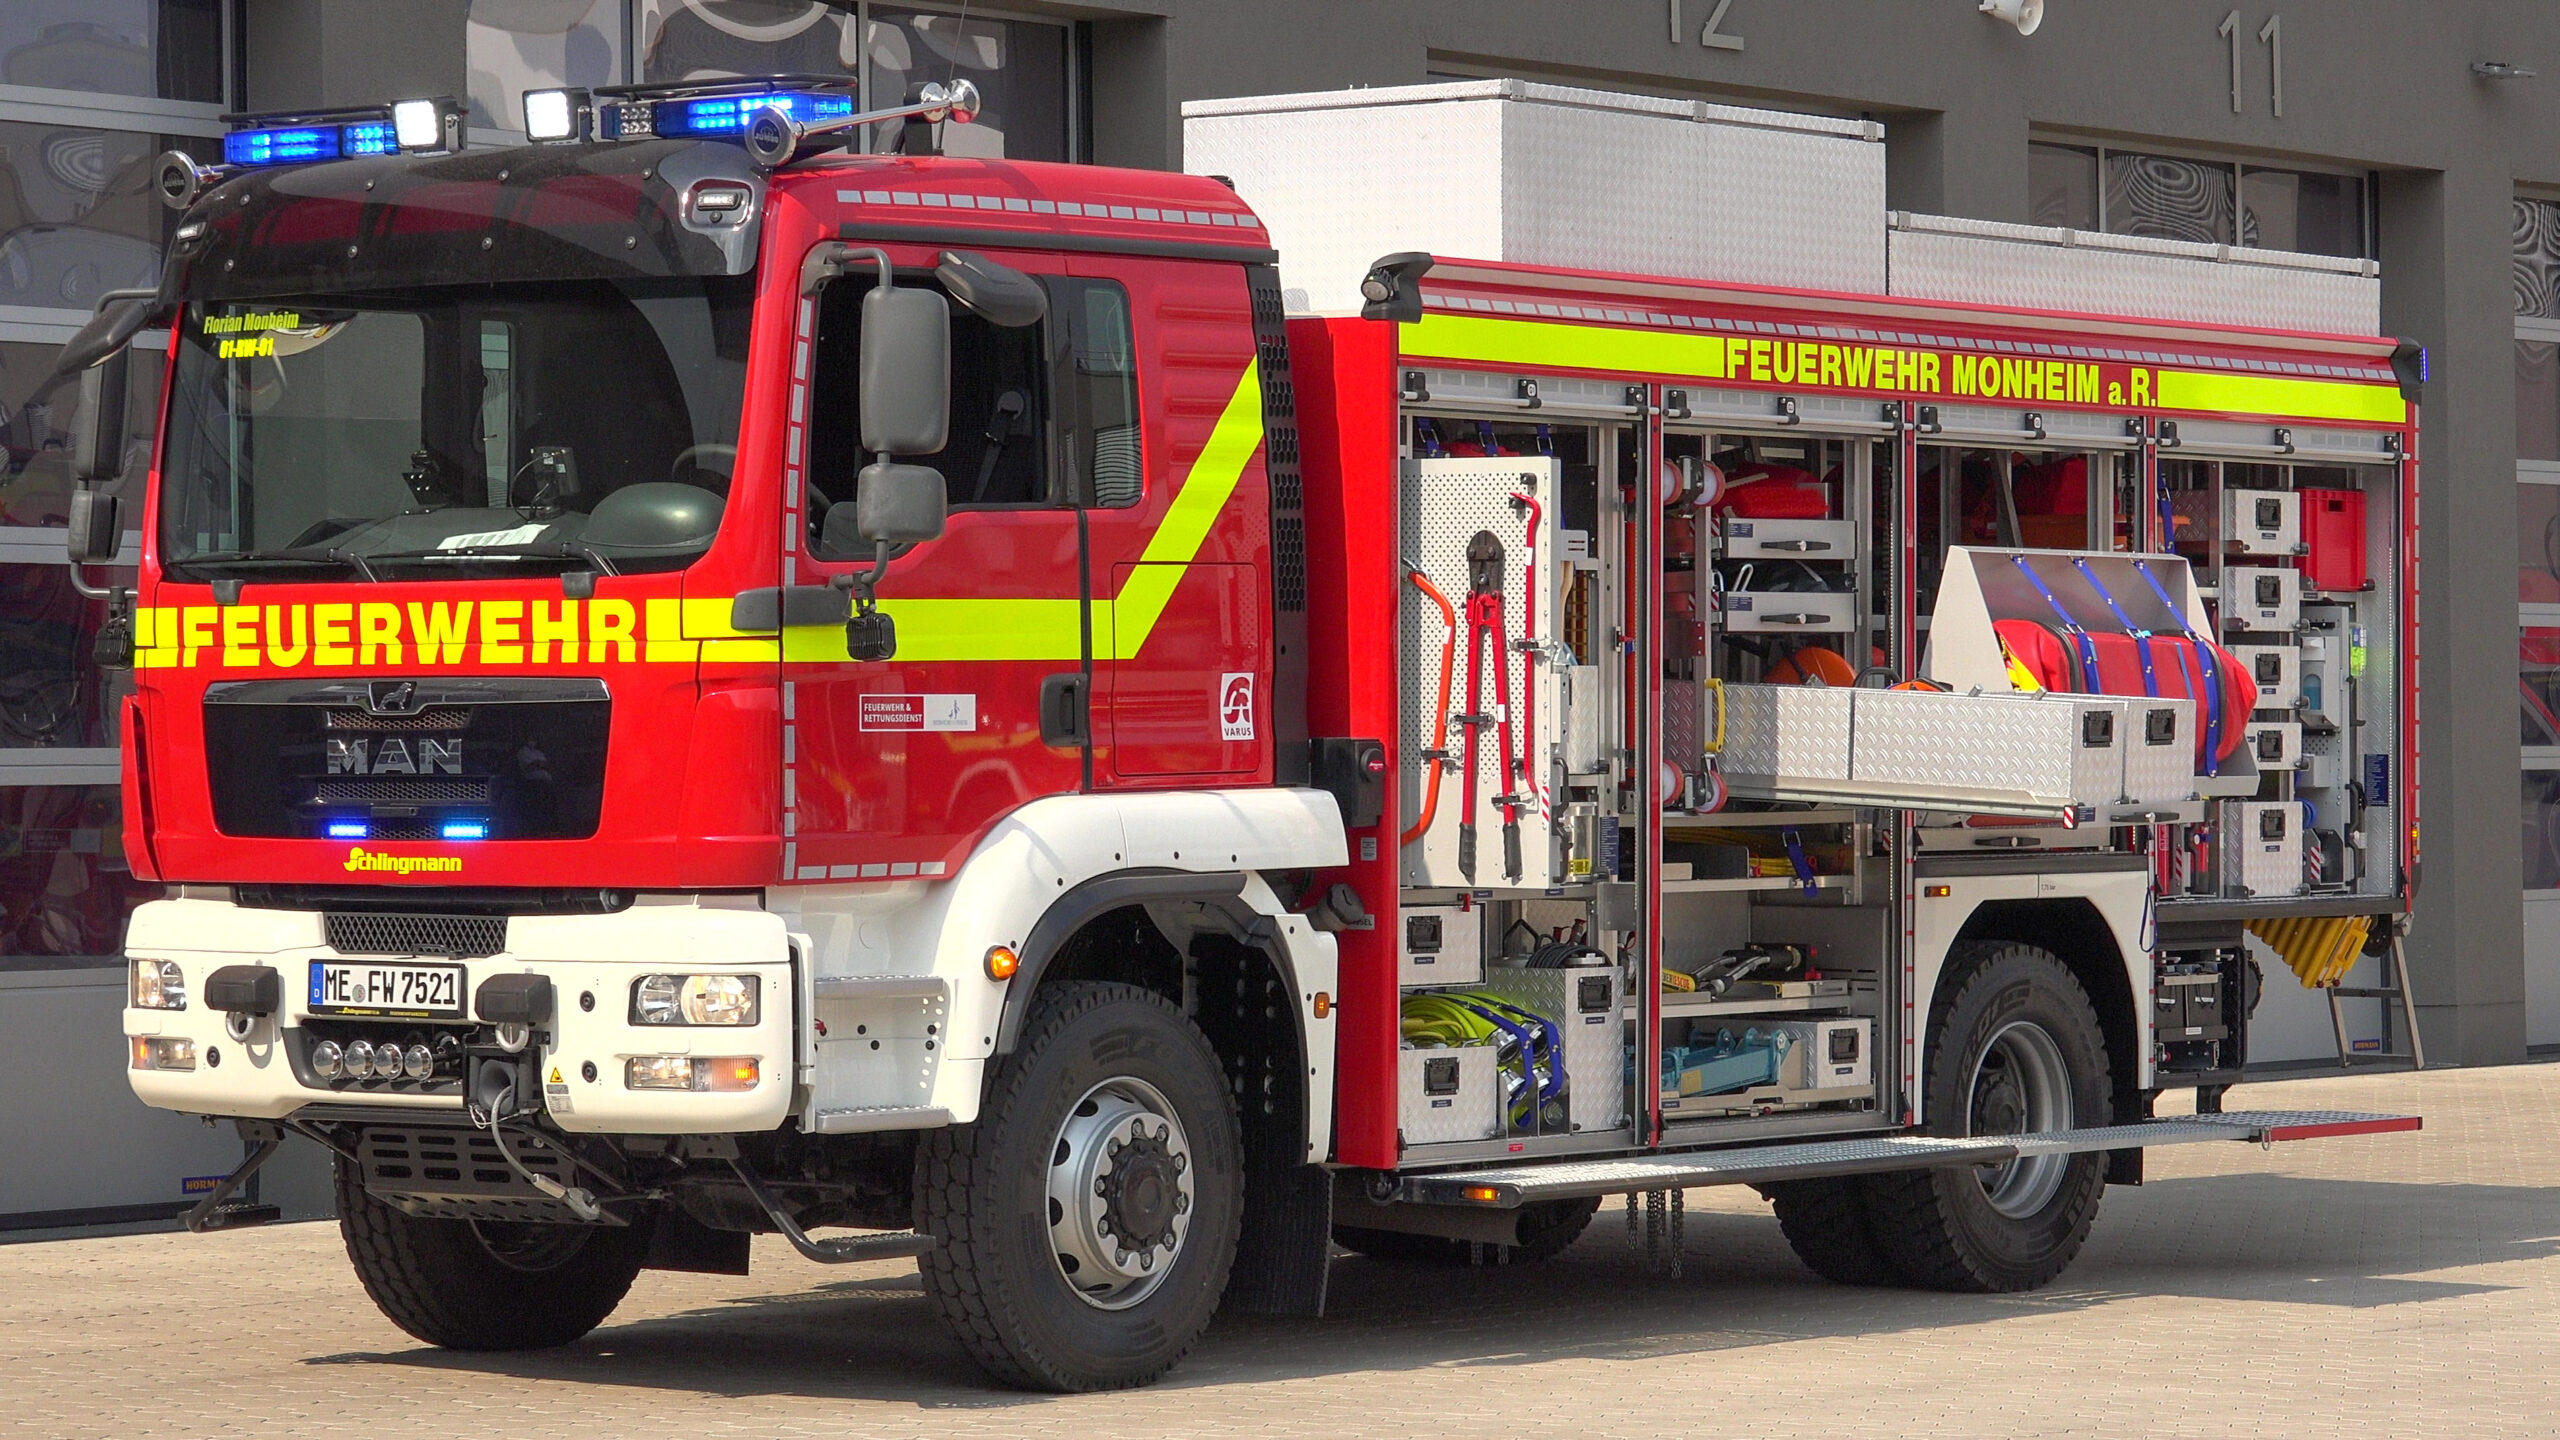 09.06.2021 – Monheim – Der neue Rüstwagen der Feuerwehr Monheim am Rhein